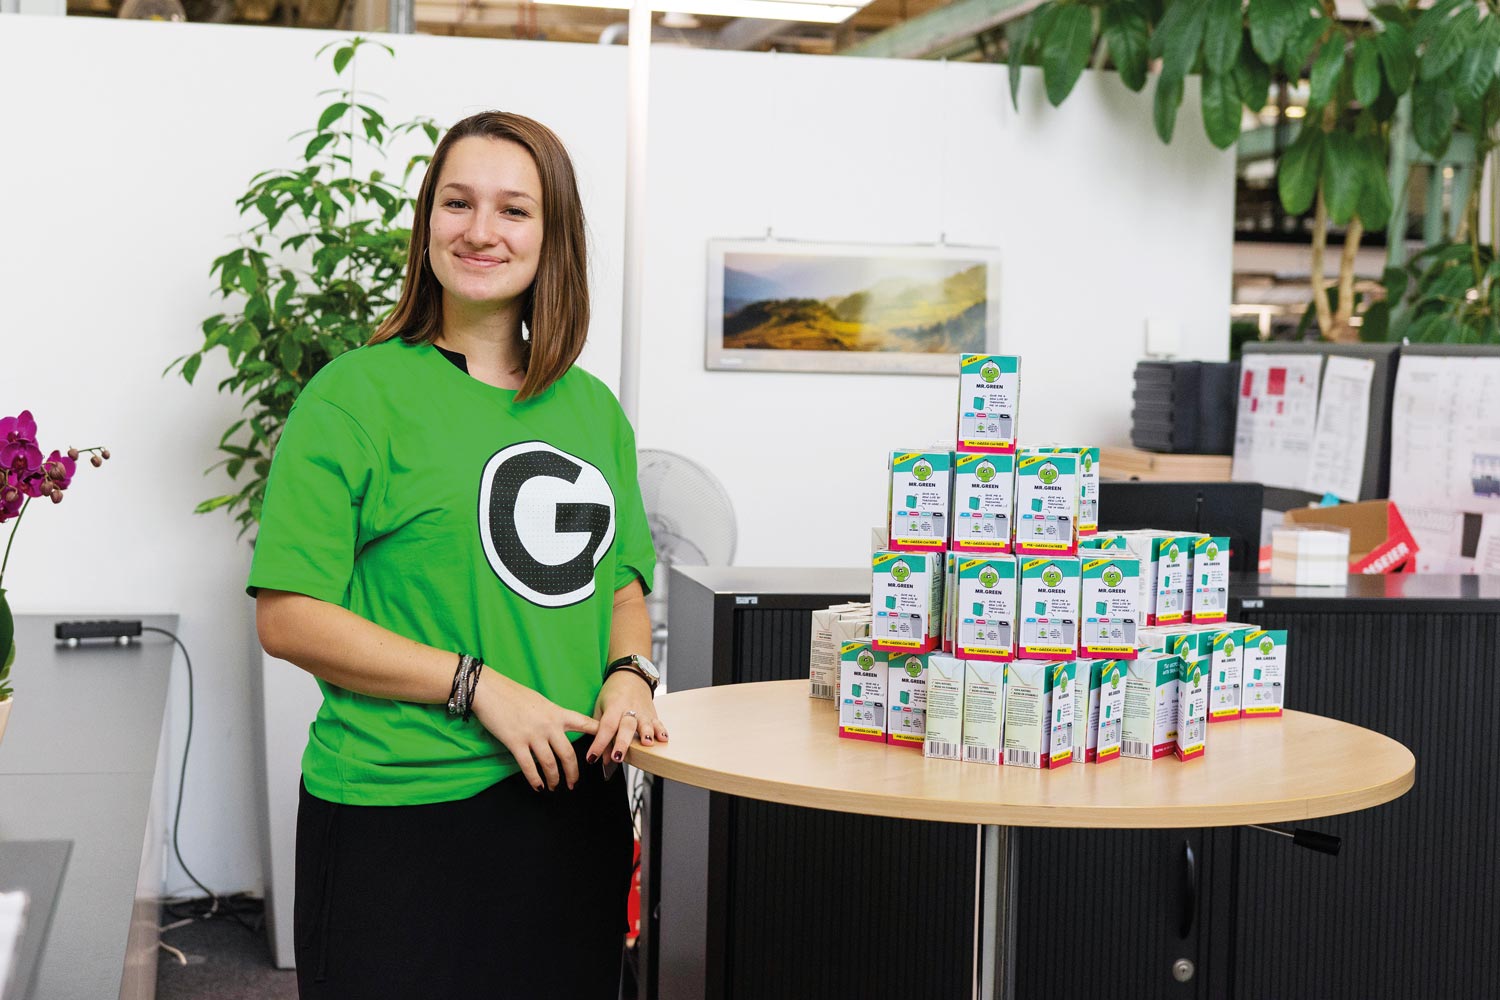 Cleveres Recycling am Arbeitsplatz | Mr. Green